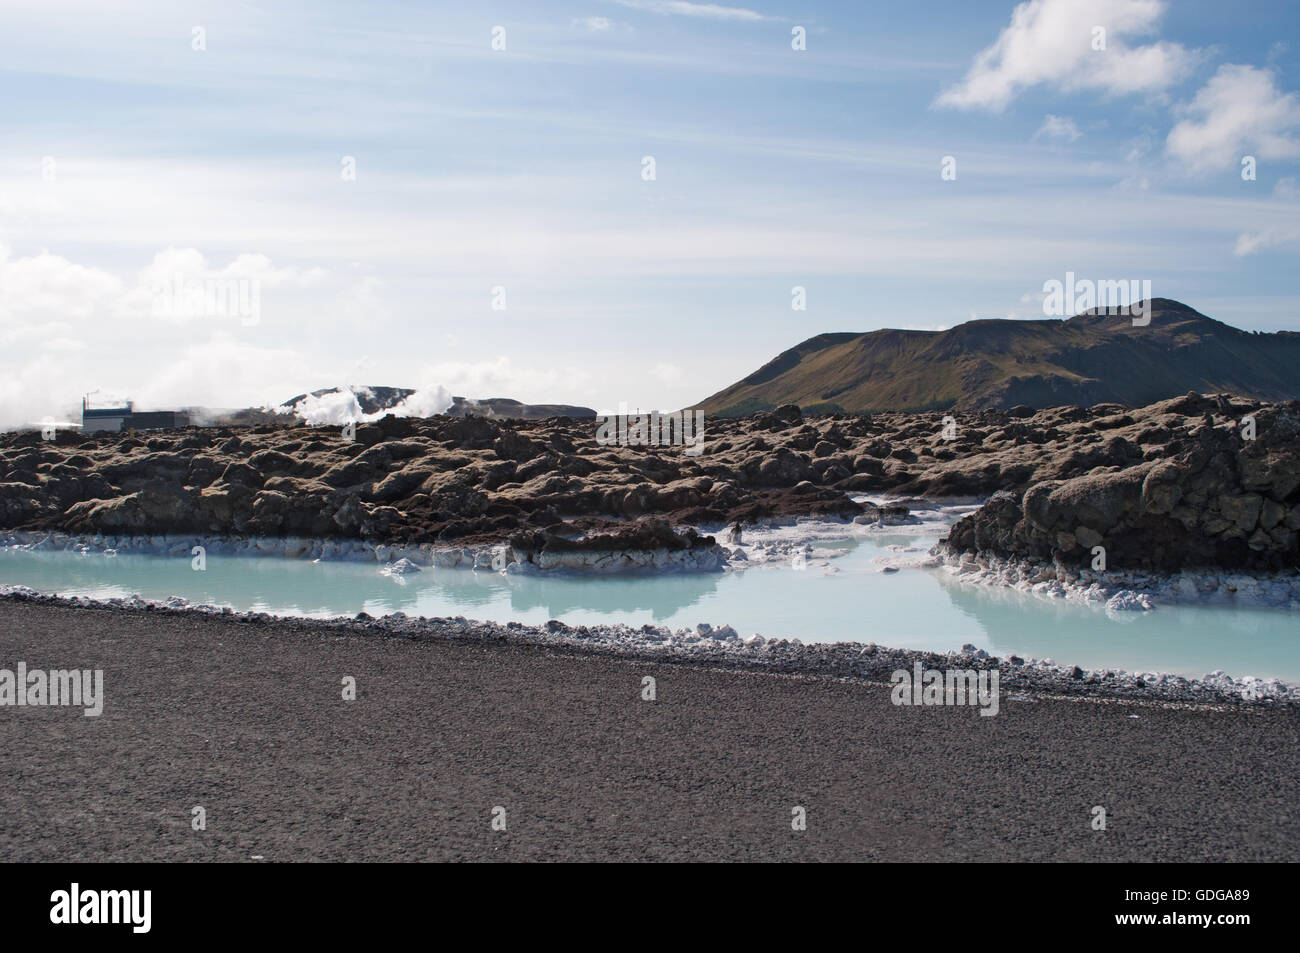 Islande : détails du Blue Lagoon, un spa géothermique situé dans un champ de lave en Grindavik, l'une des attractions touristiques les plus visitées Banque D'Images